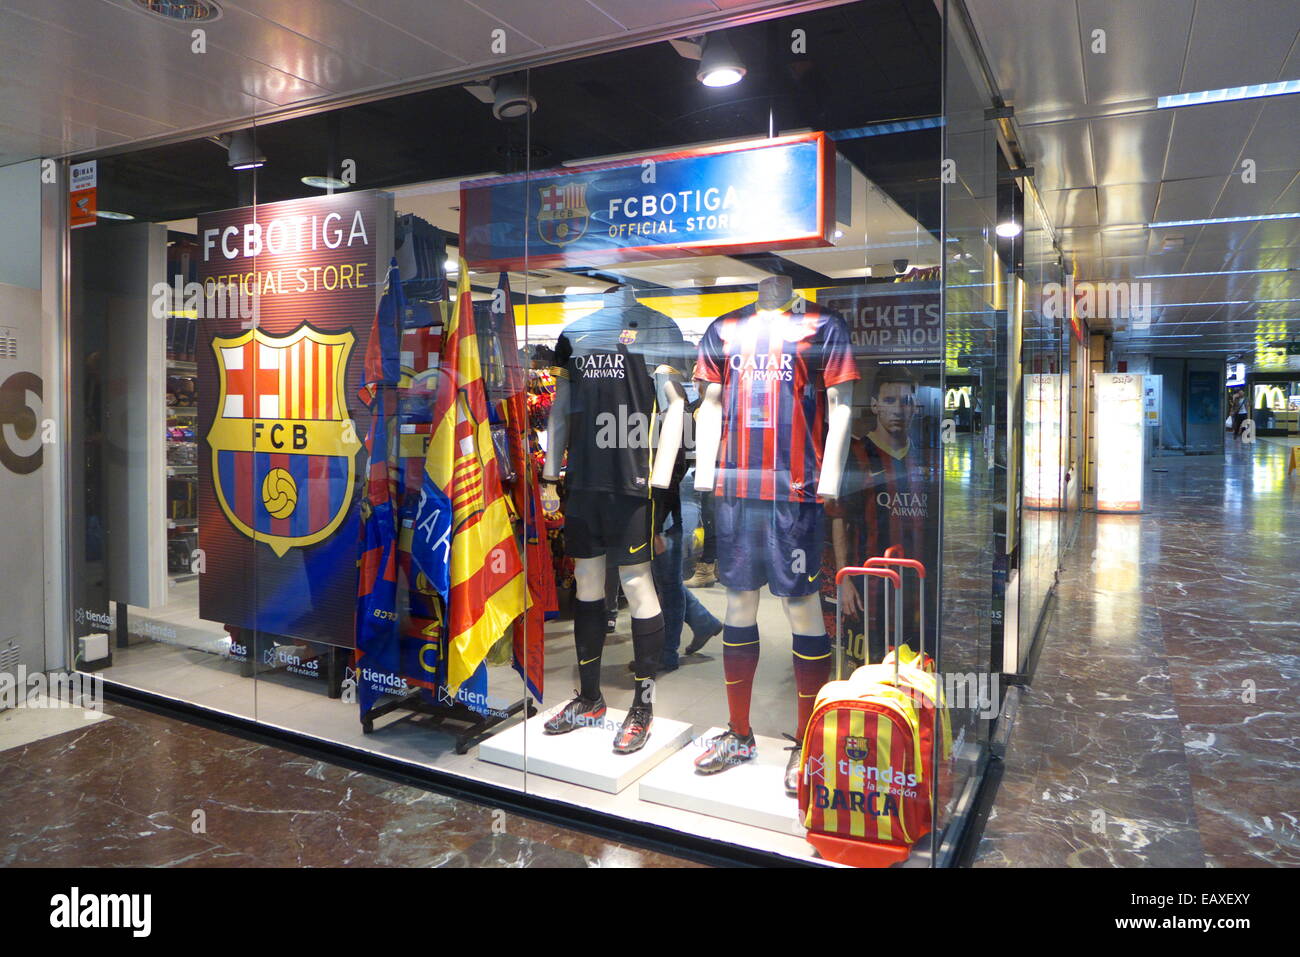 Huisje Berg kleding op de jouwe Spain Catalonia Barcelona FC Barcelona Fan club souvenirs shop Stock Photo  - Alamy